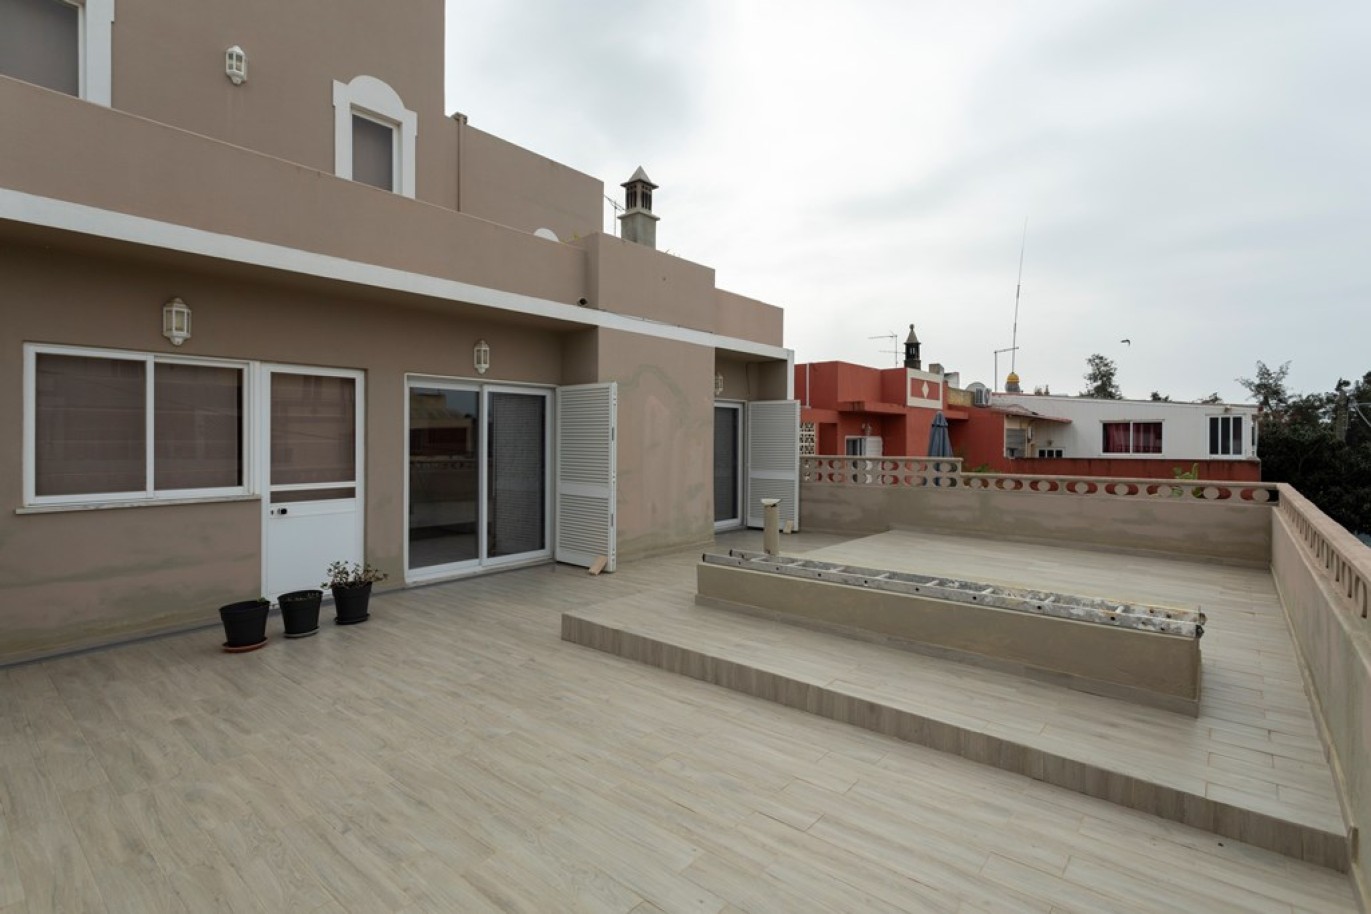 Propriedade com dois T1, um T2 e espaço comercial, para venda em Vilamoura, Algarve_253023